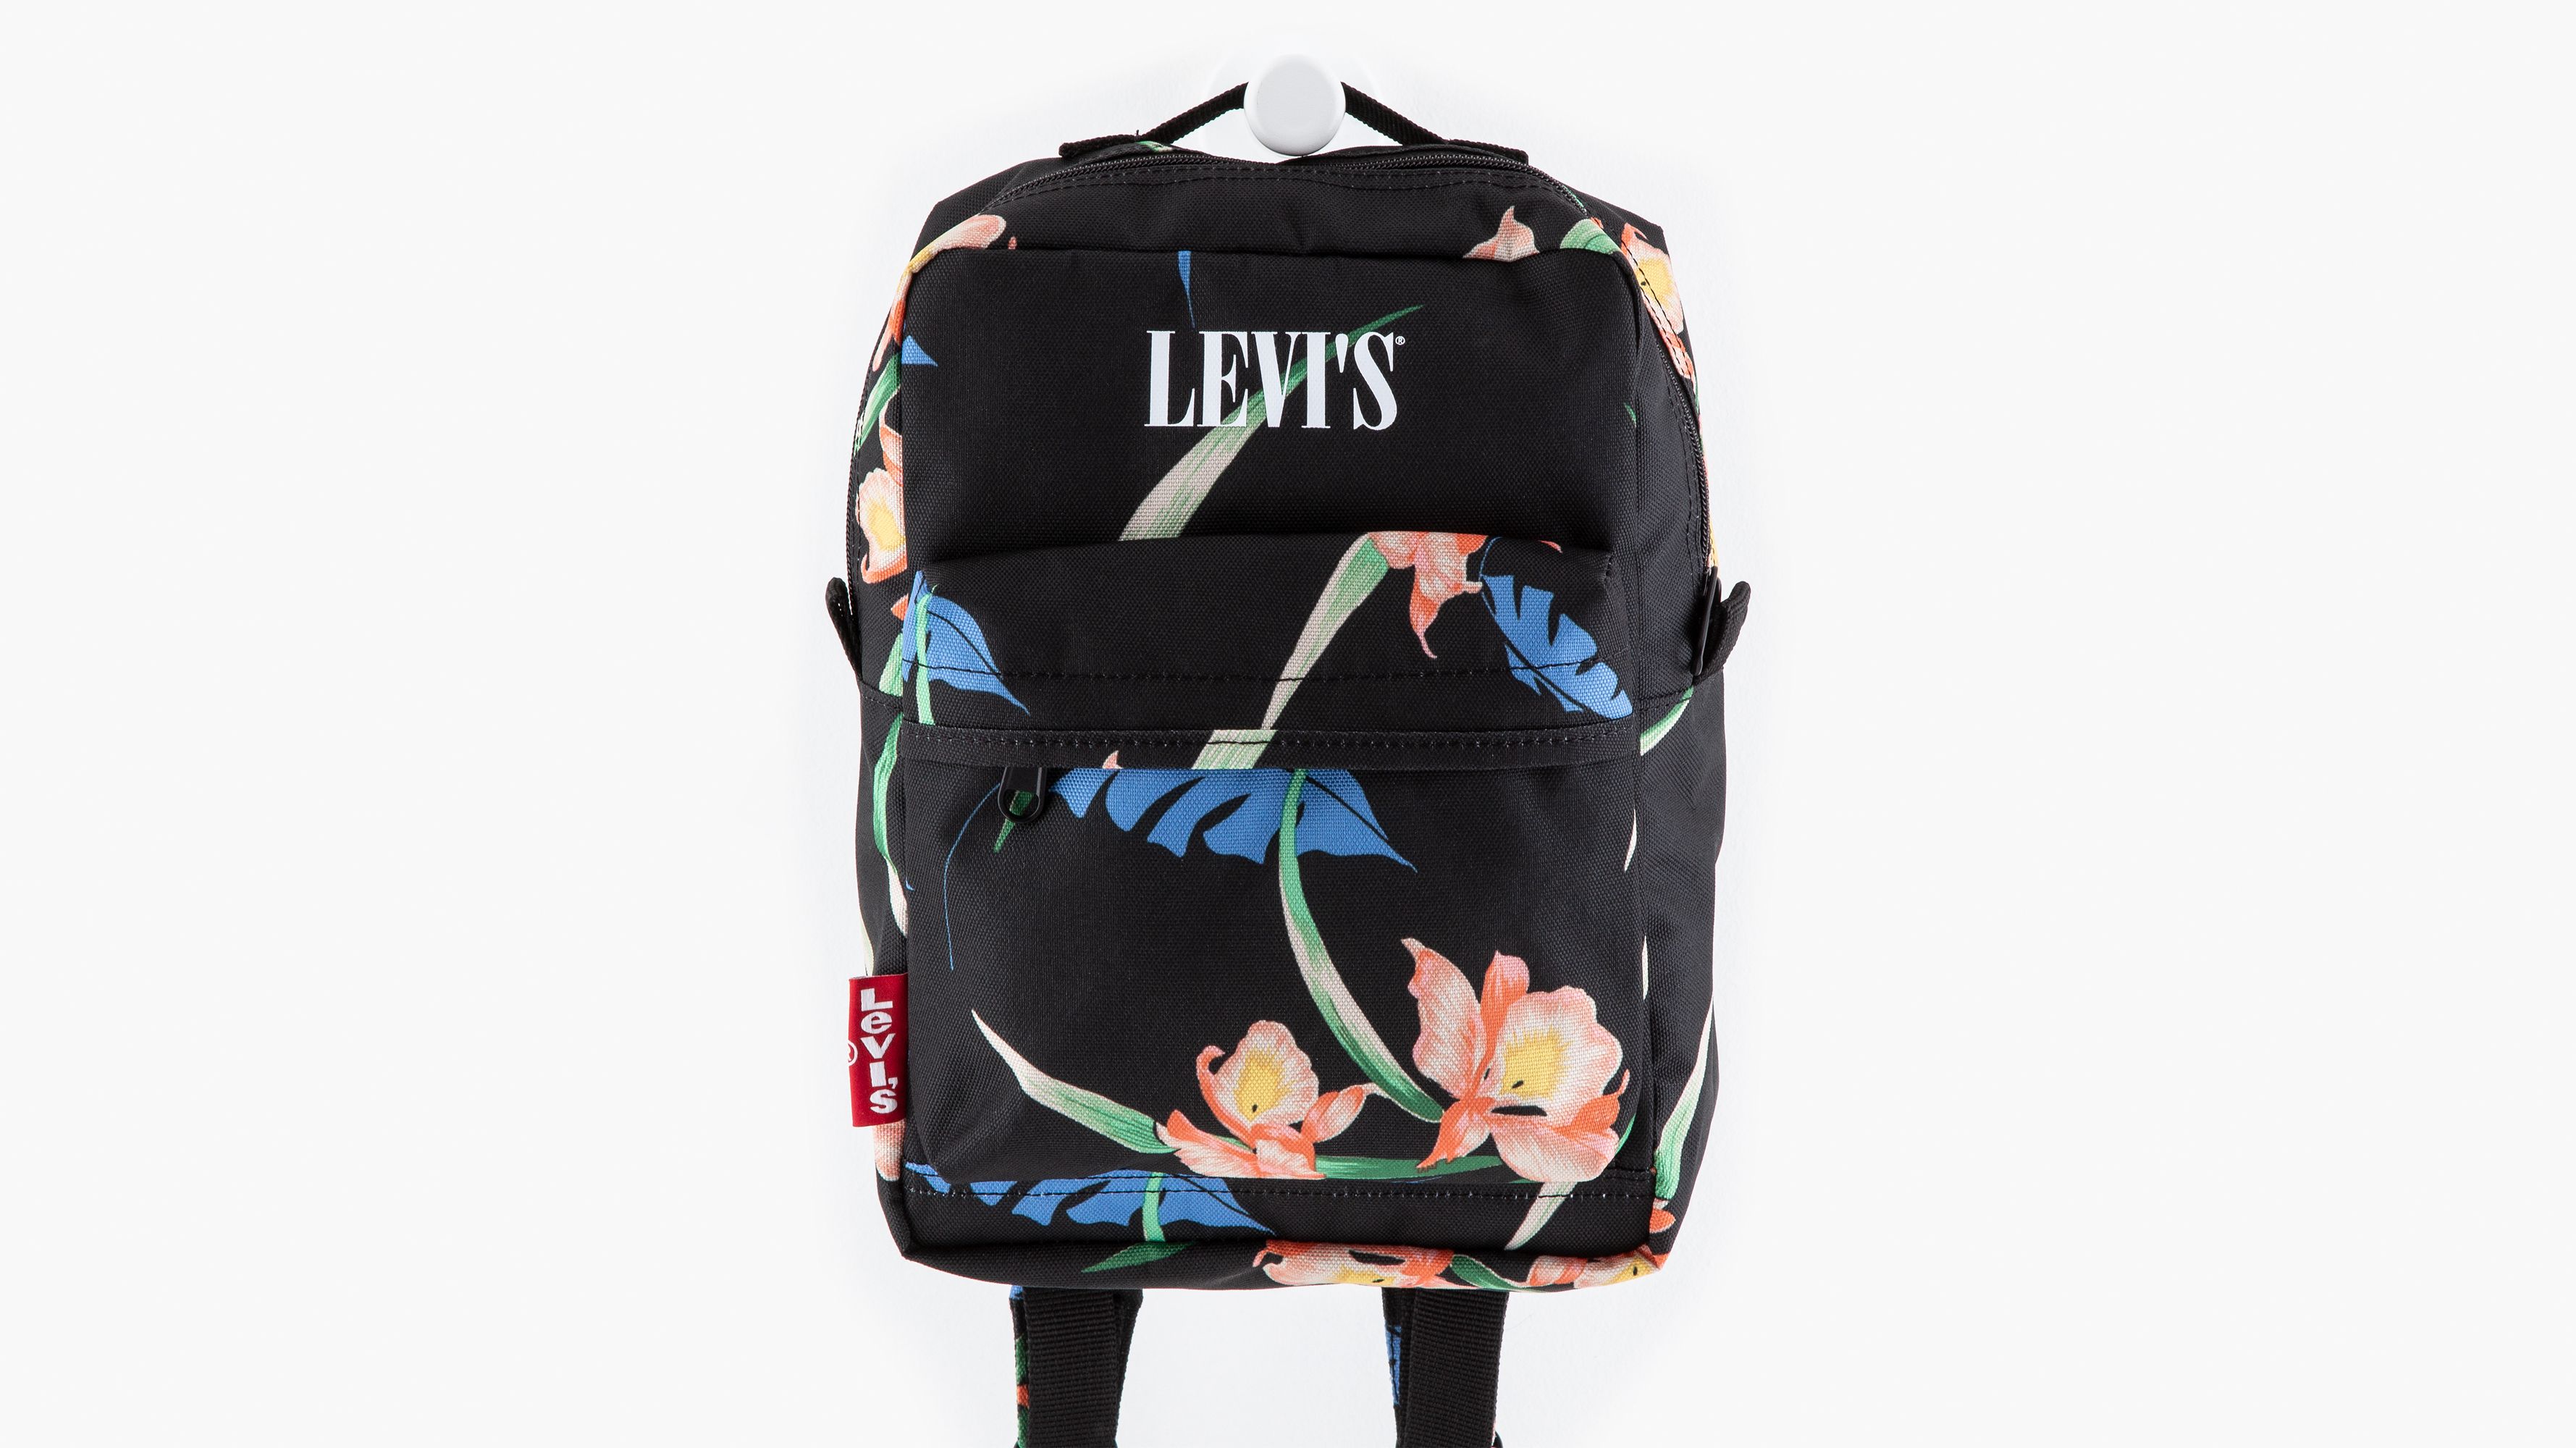 levis school bags